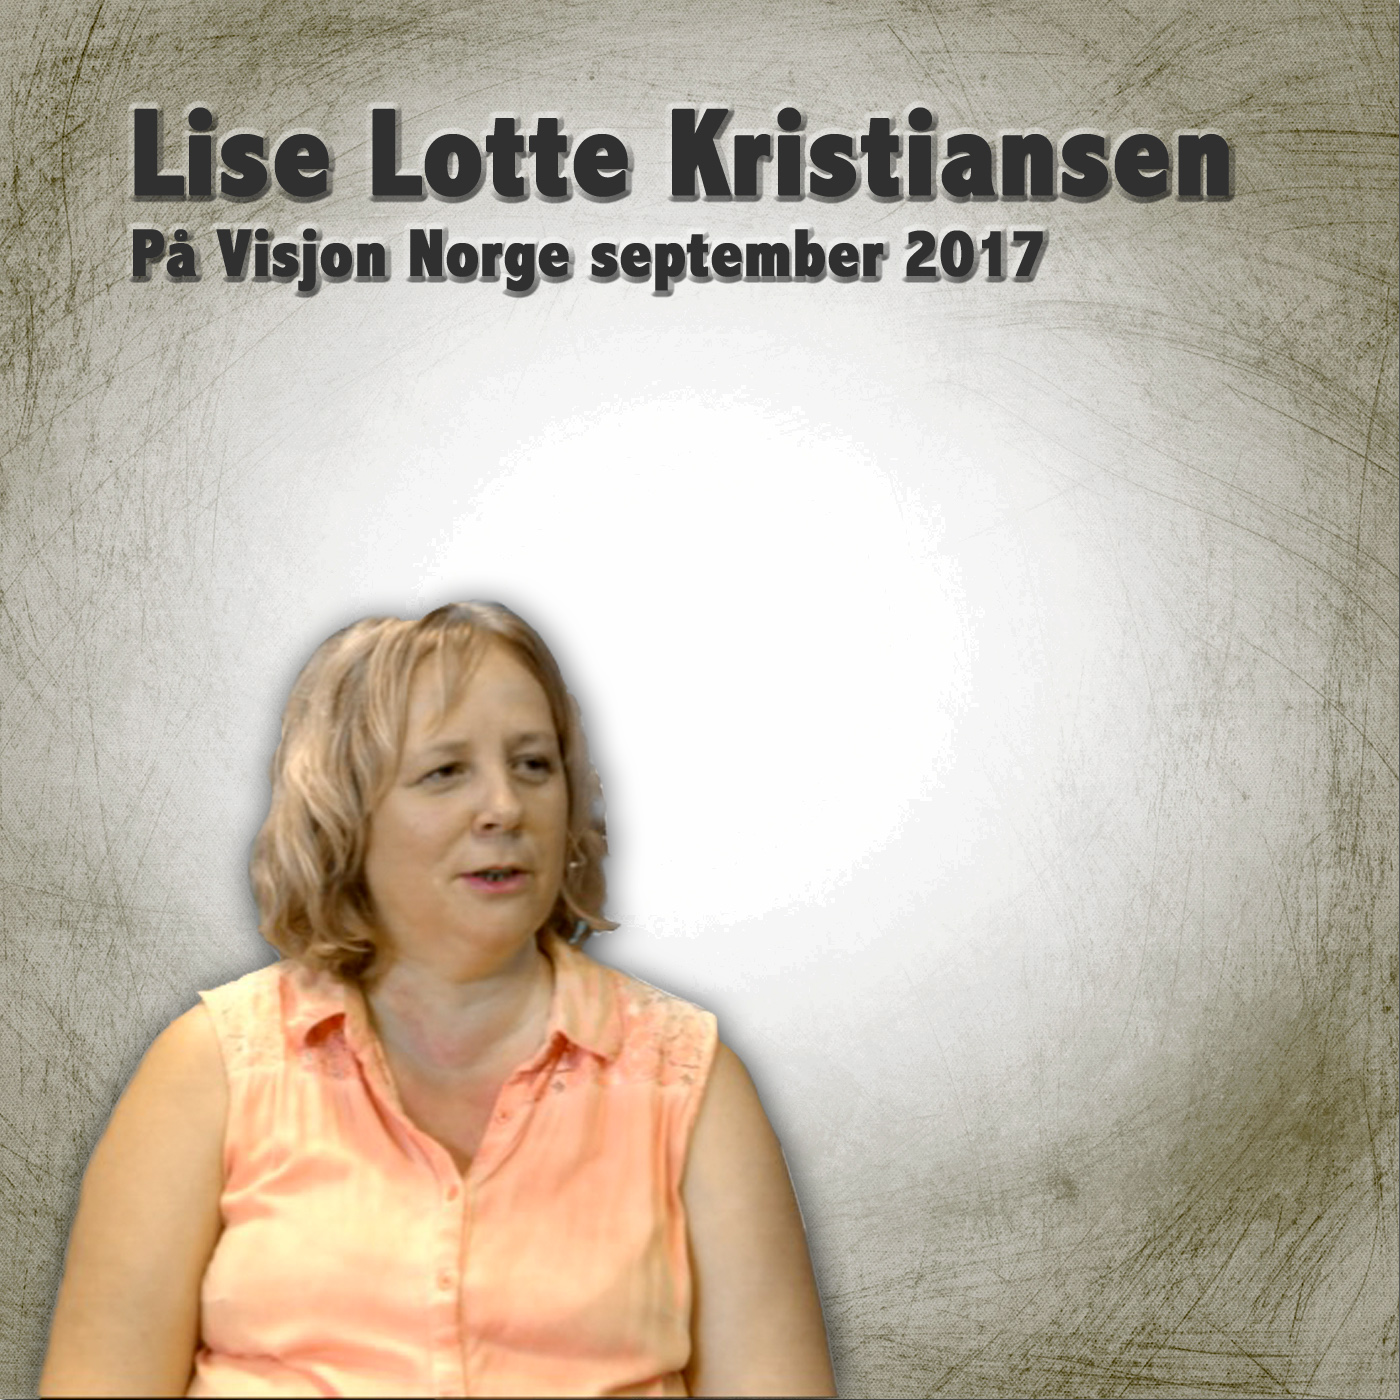 Lise Lotte Kristiansen